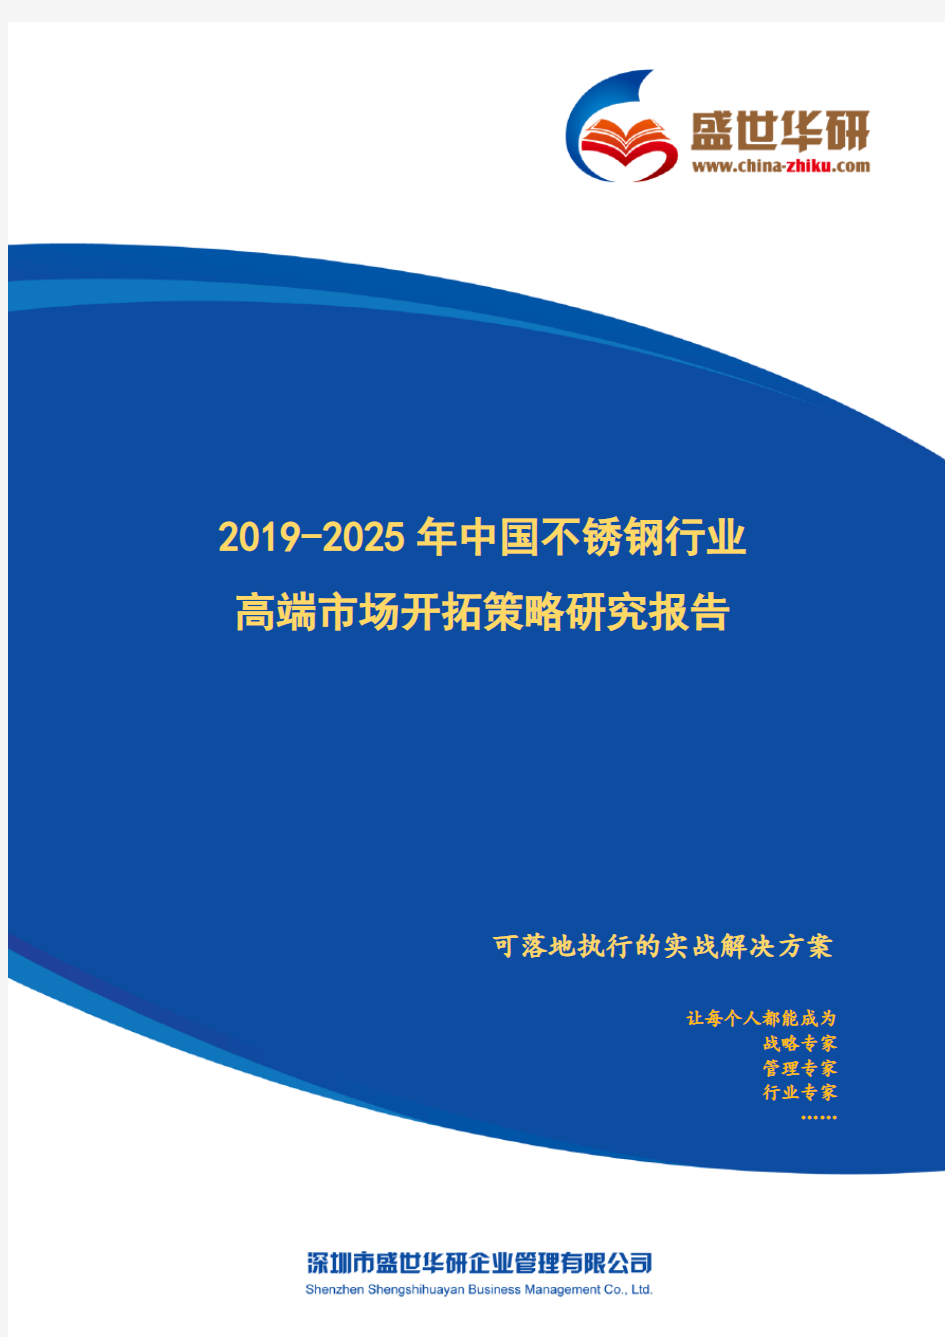 【完整版】2019-2025年中国不锈钢行业高端市场开拓策略研究报告